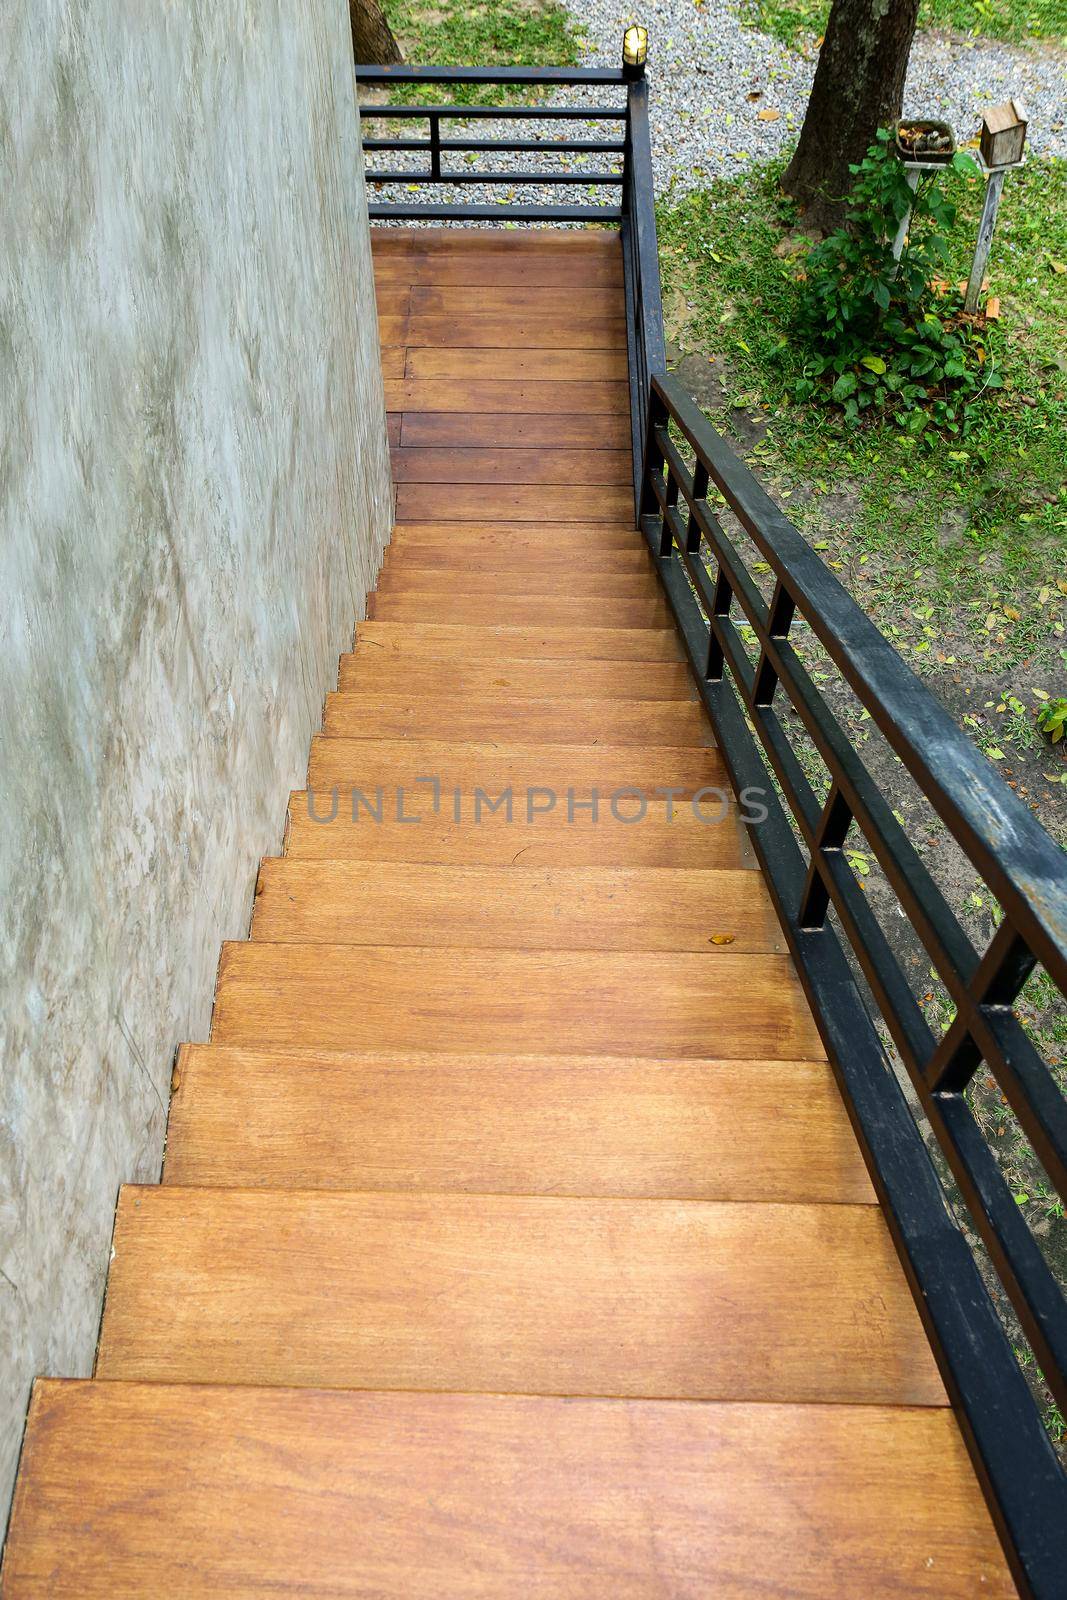 Wooden floor stairs